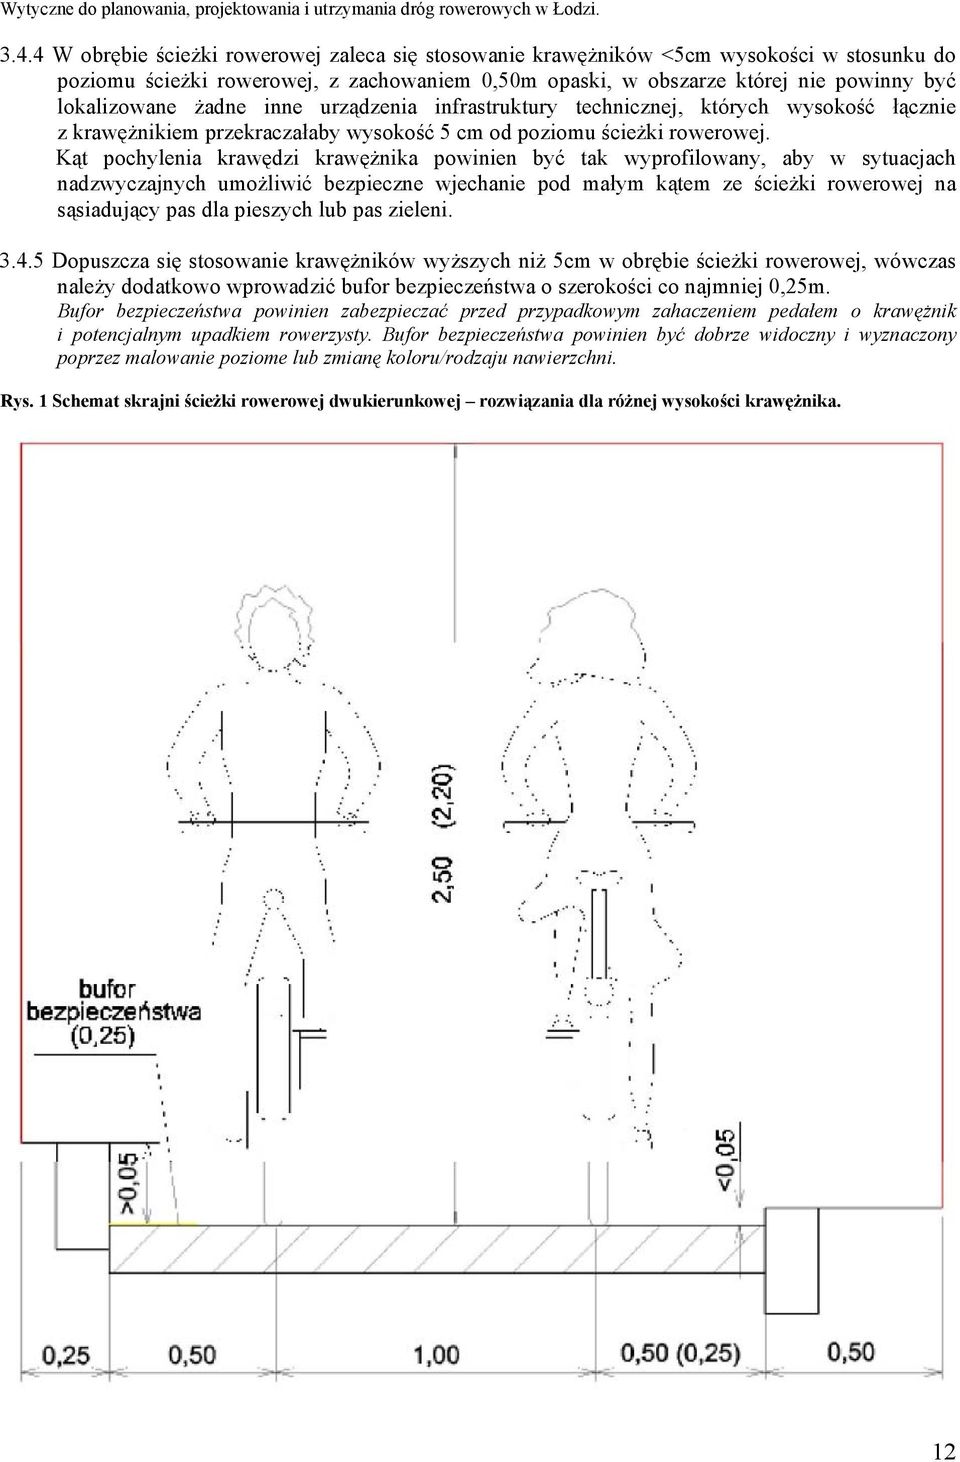 Kąt pochylenia krawędzi krawężnika powinien być tak wyprofilowany, aby w sytuacjach nadzwyczajnych umożliwić bezpieczne wjechanie pod małym kątem ze ścieżki rowerowej na sąsiadujący pas dla pieszych